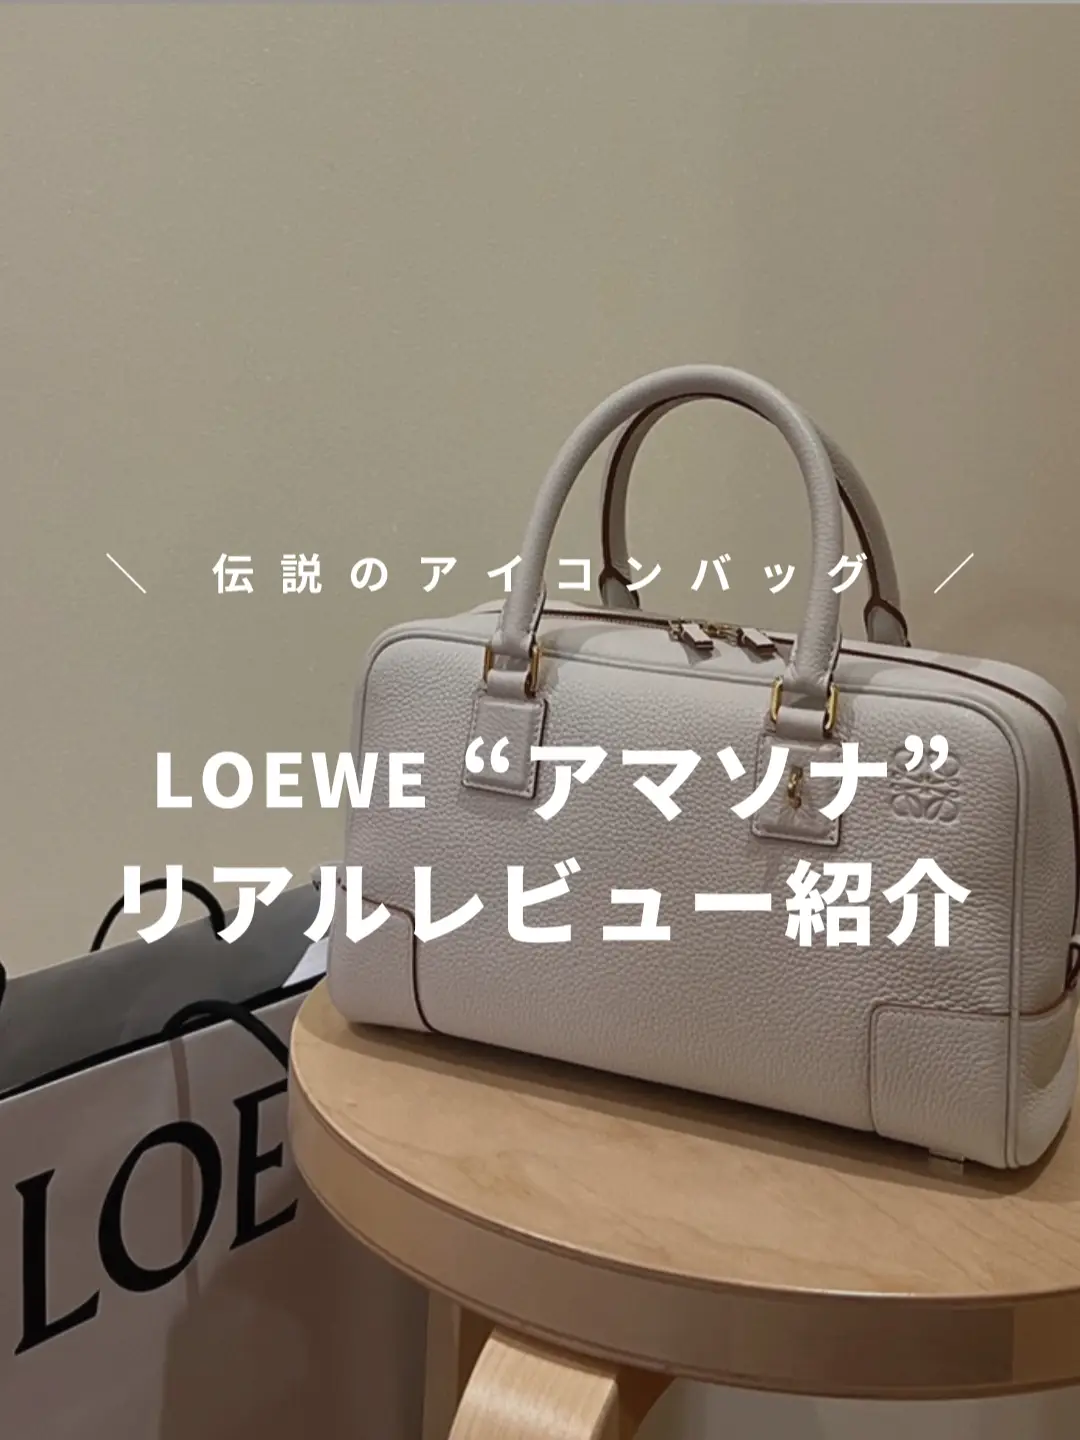 LOEWE(ロエベ)👜アマソナ紹介✨